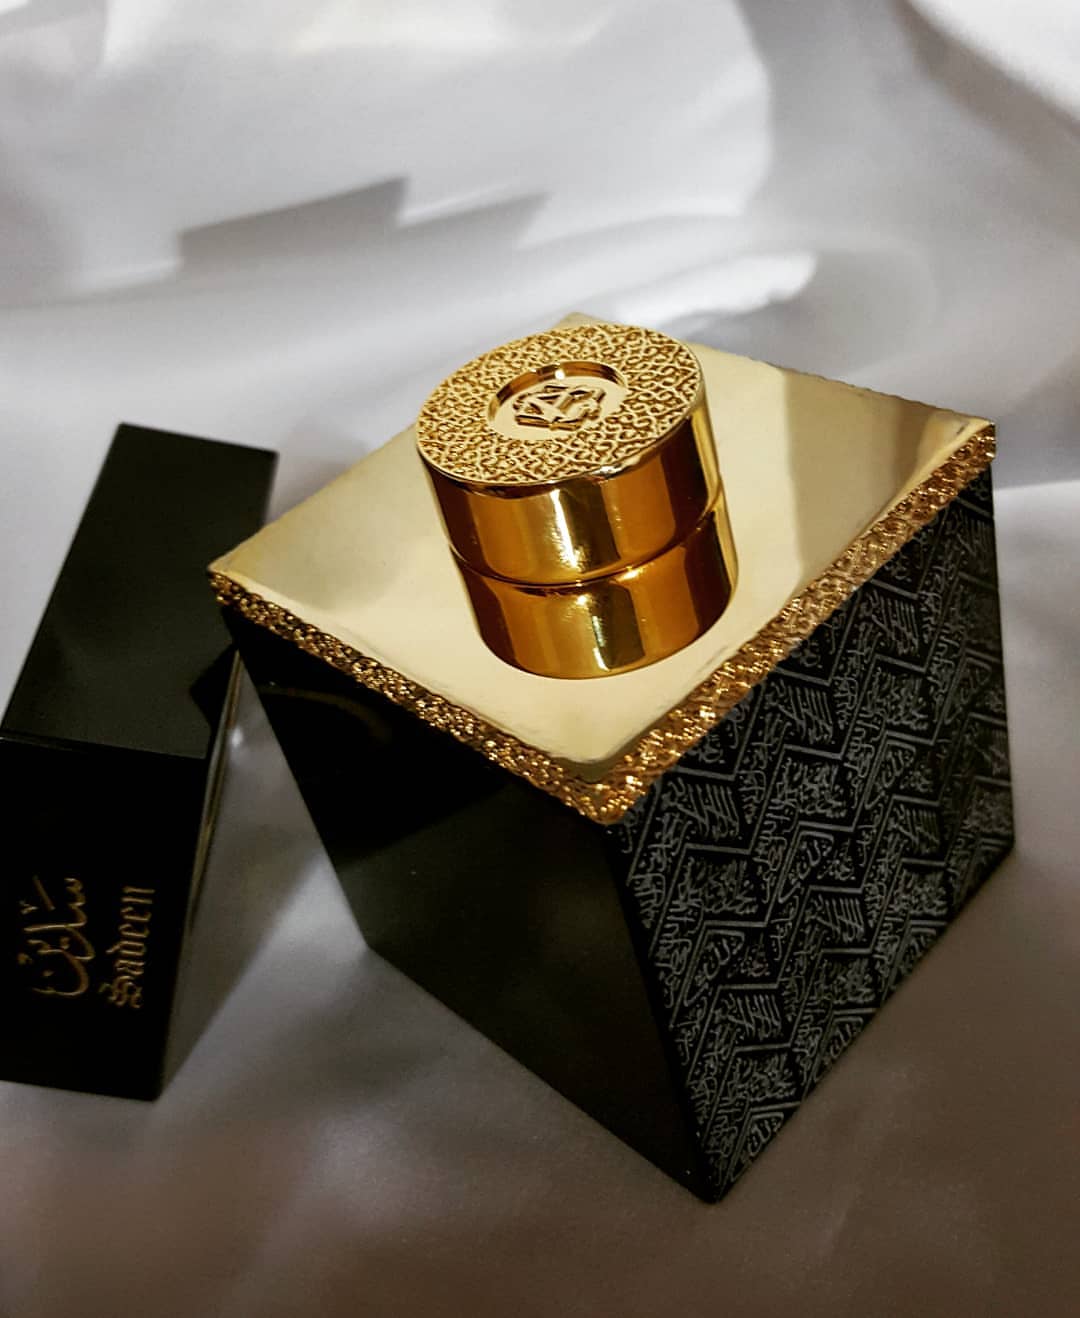 Sadeen Perfume Oil-12ml(0.4 oz) by Abdul Samad Al Qurashi - Intense oud